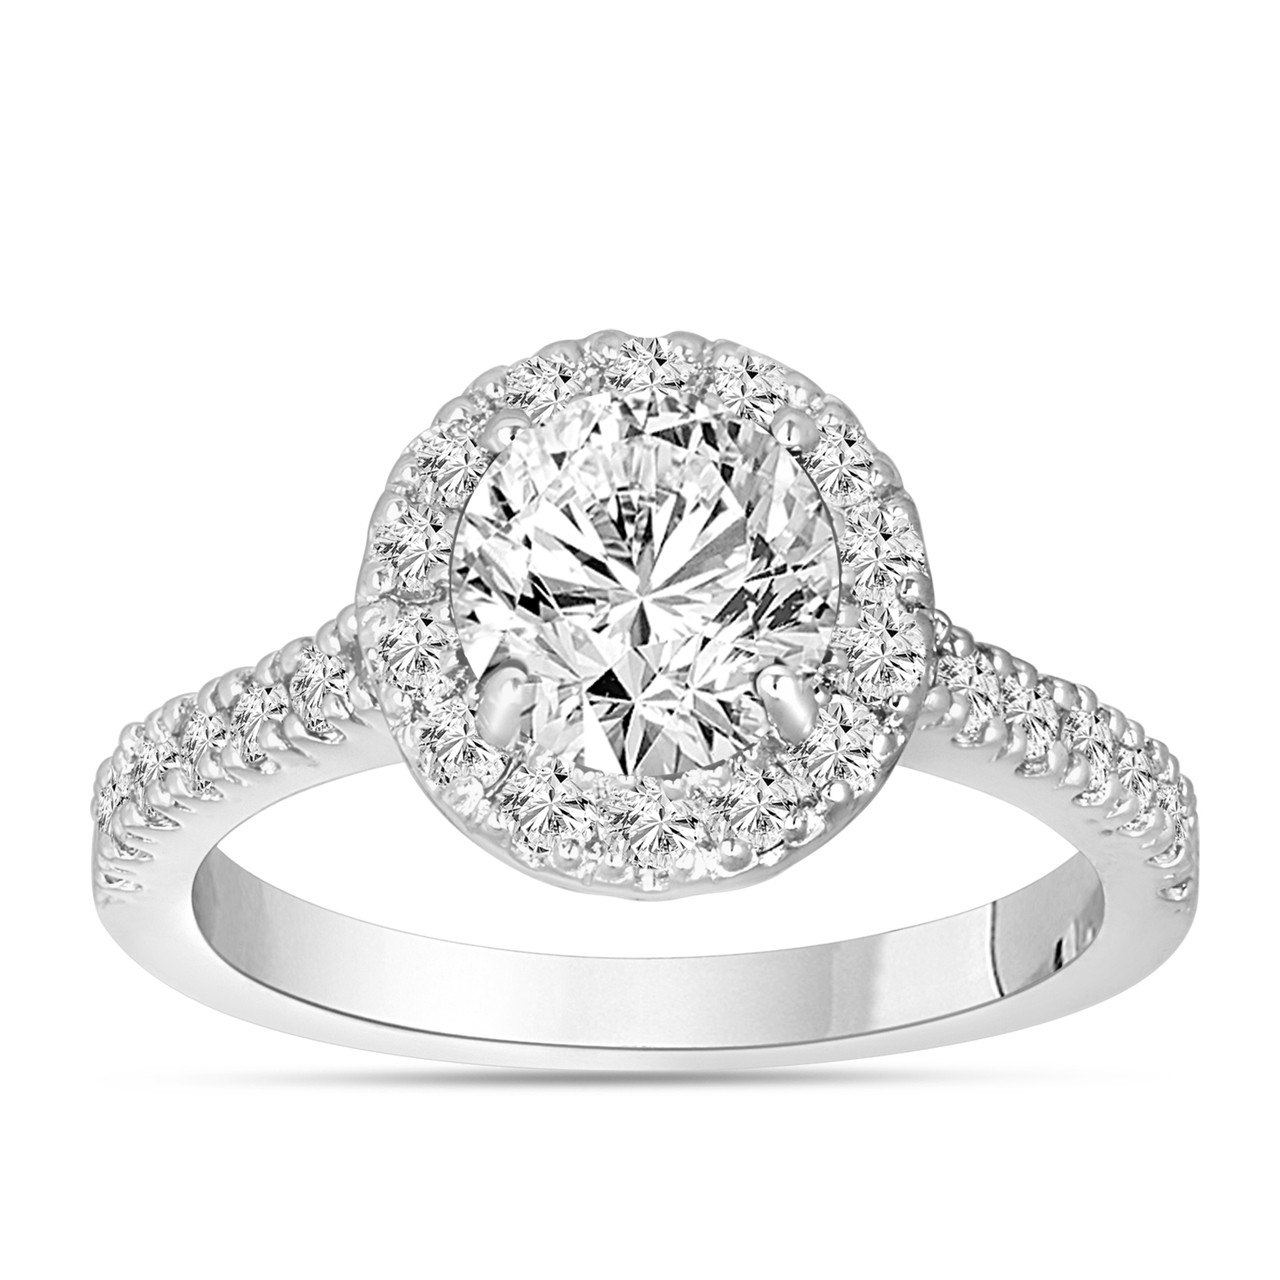 1.59 Carat Diamond Engagement Ring, Halo Pave Bridal Ring, Wedding Ring ...